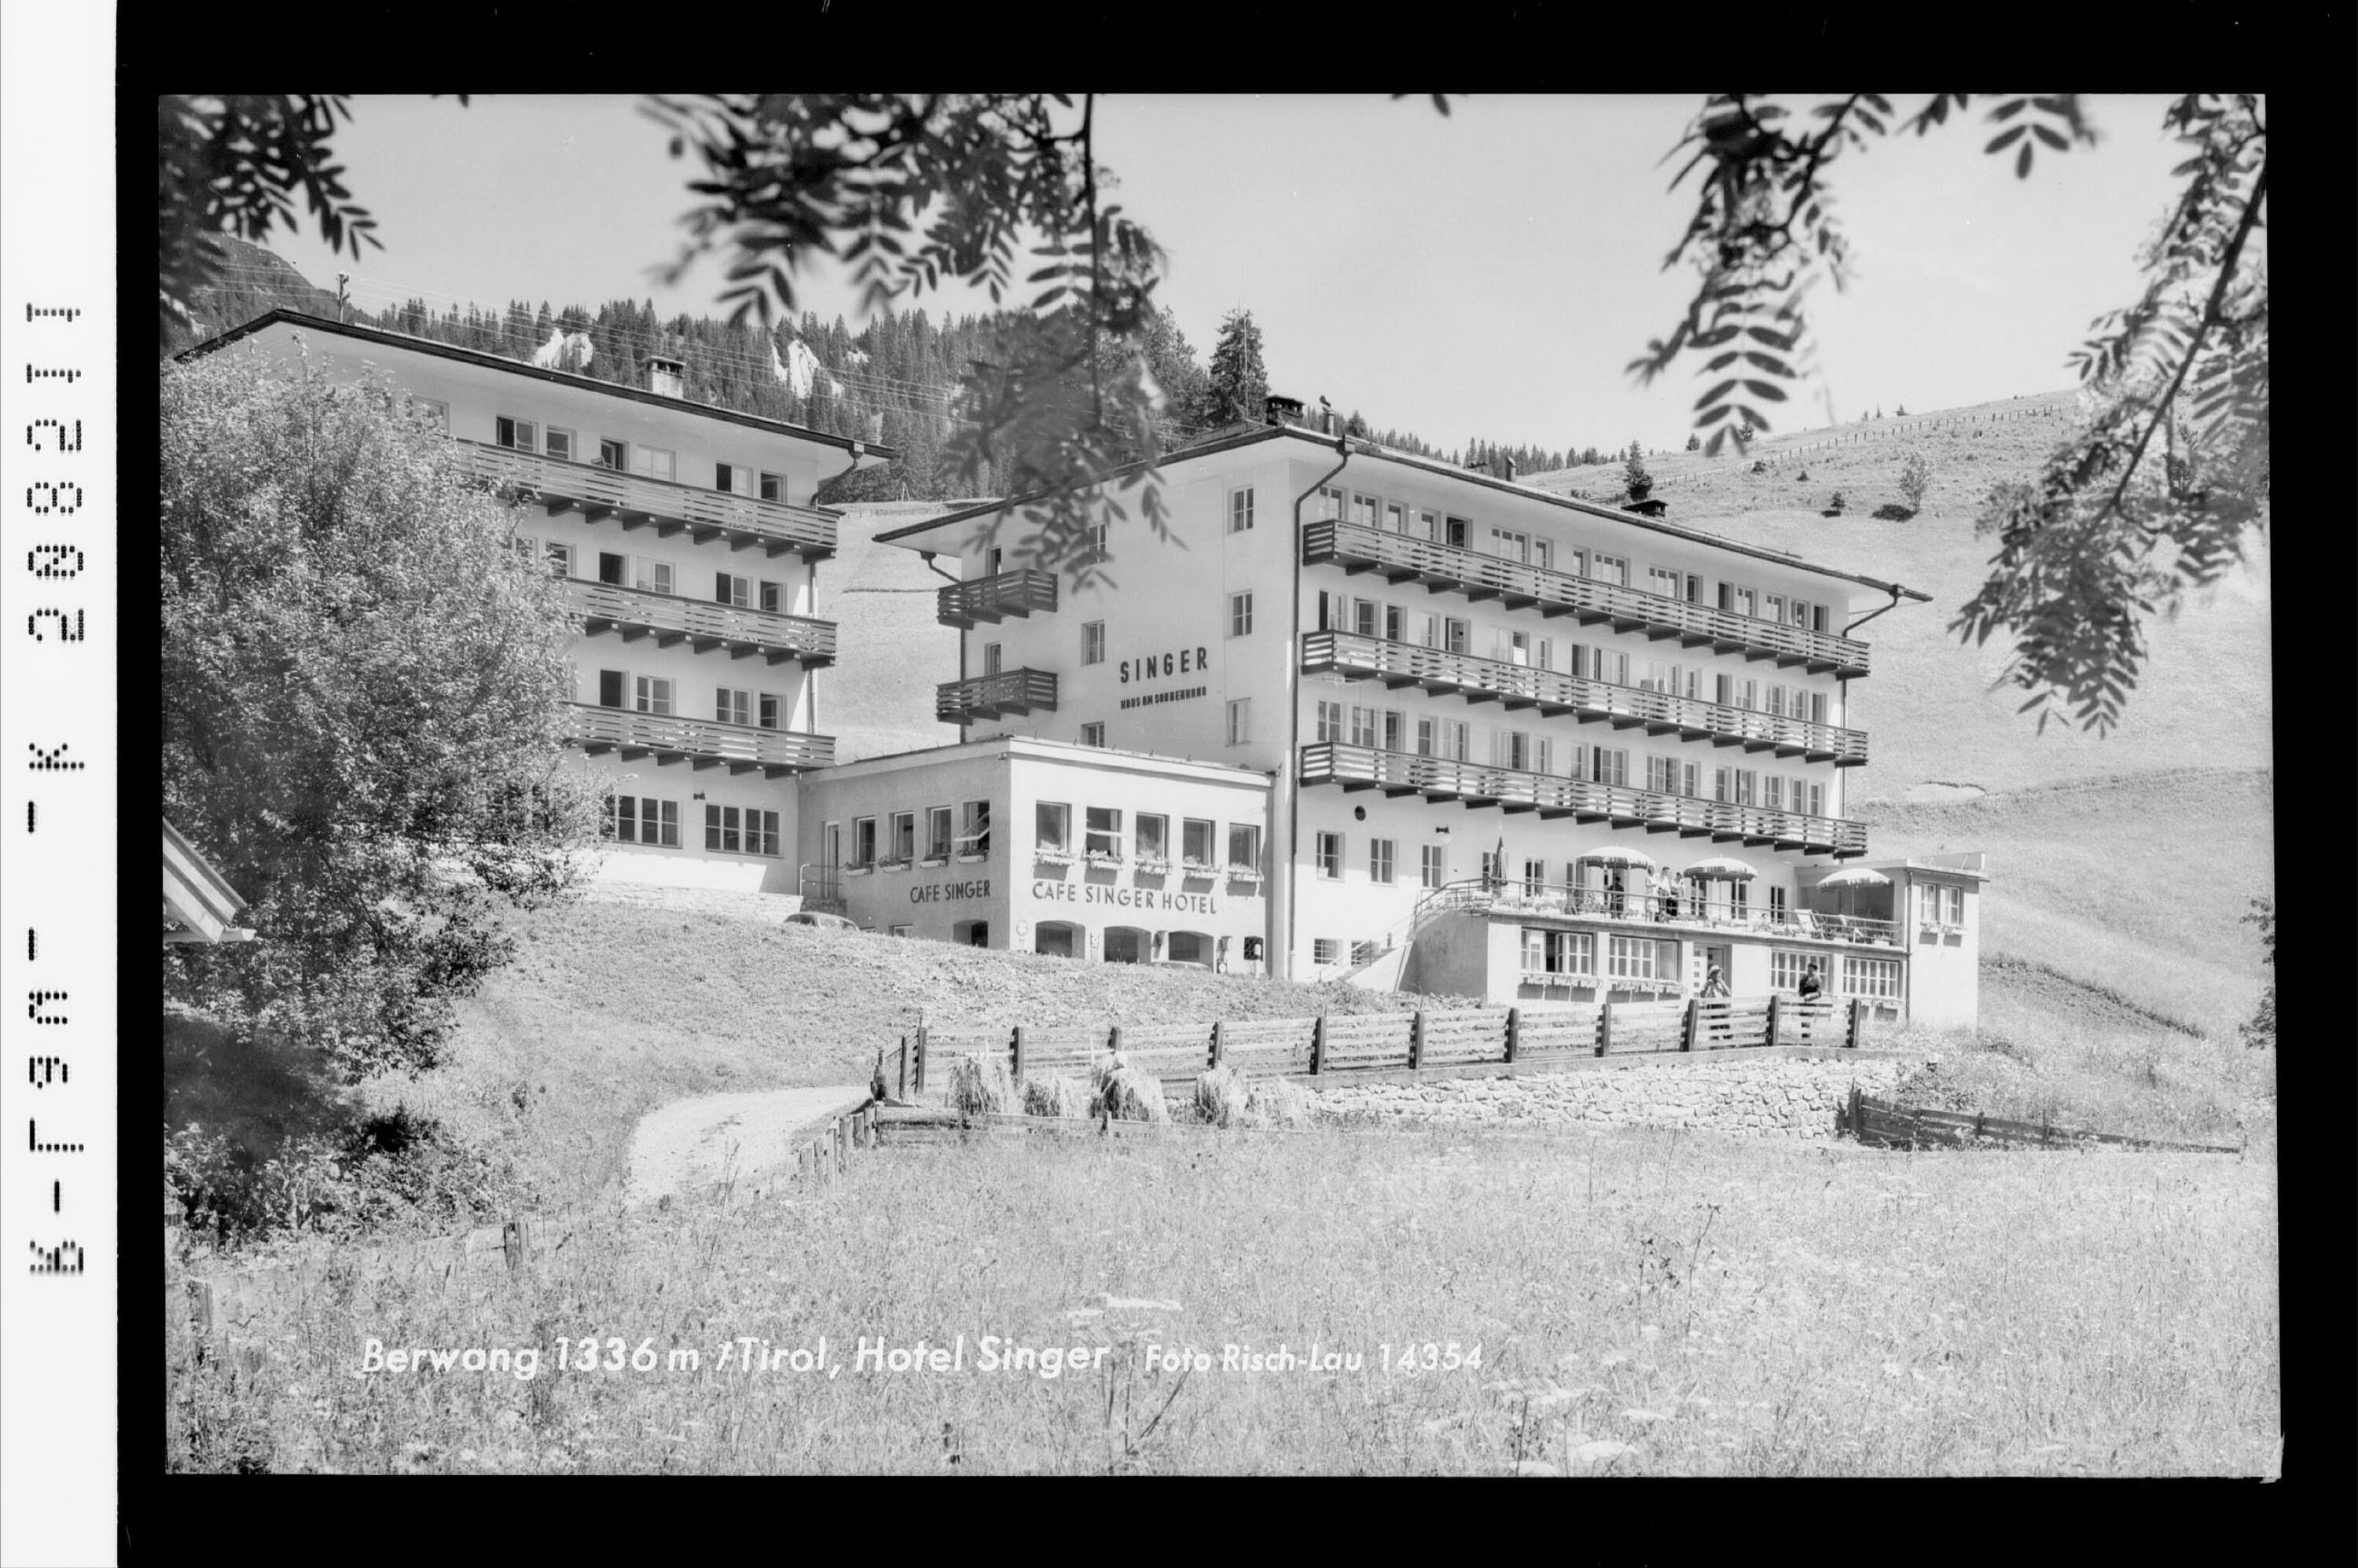 Berwang 1336 m in Tirol, Hotel Singer></div>


    <hr>
    <div class=